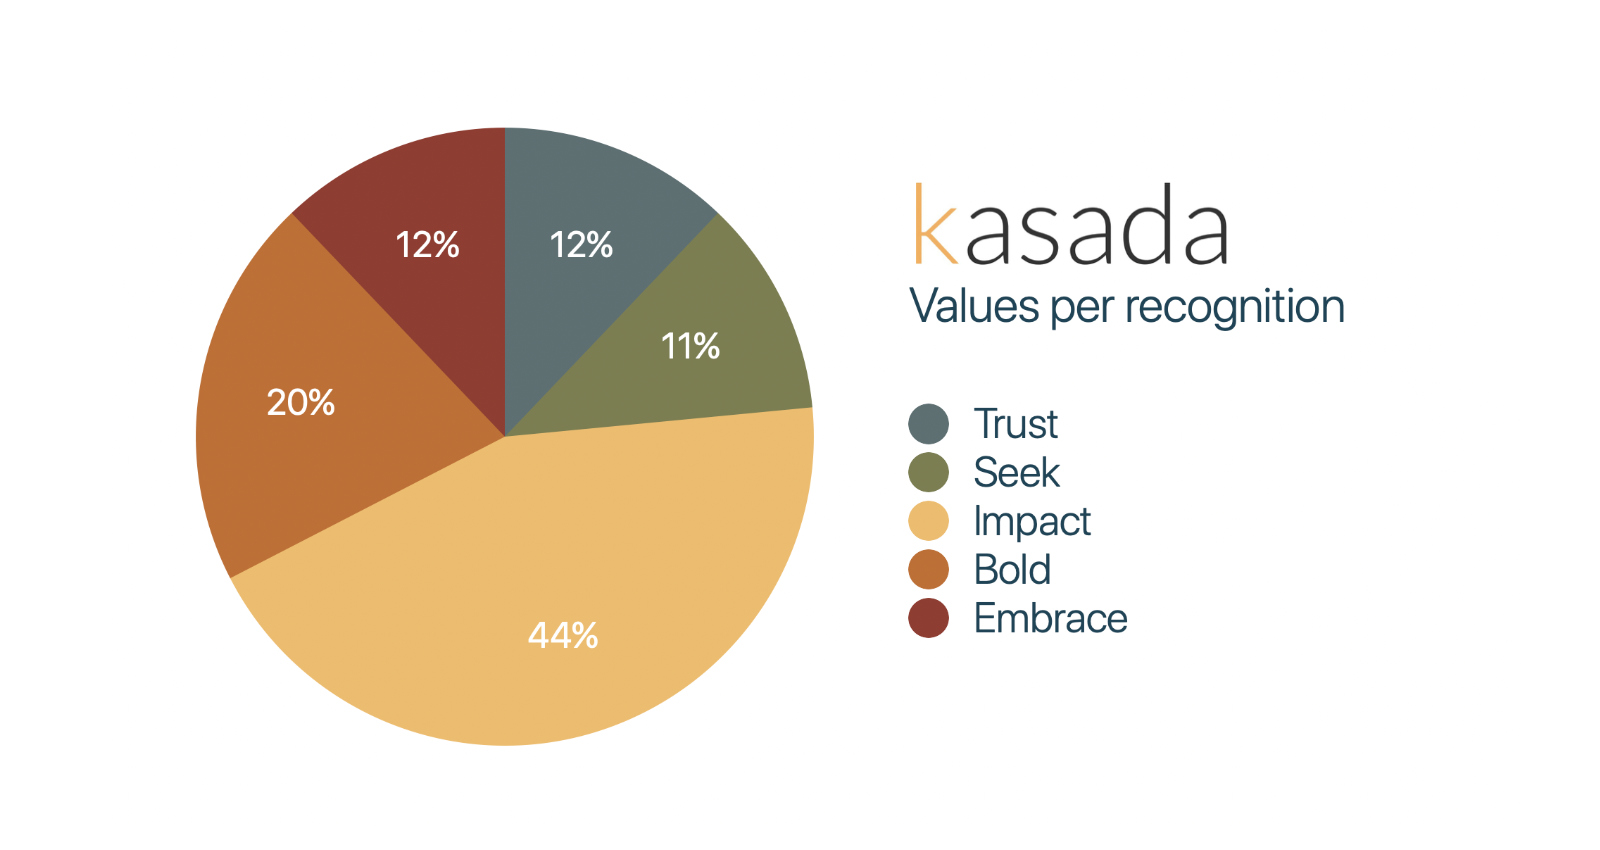  Kasada values